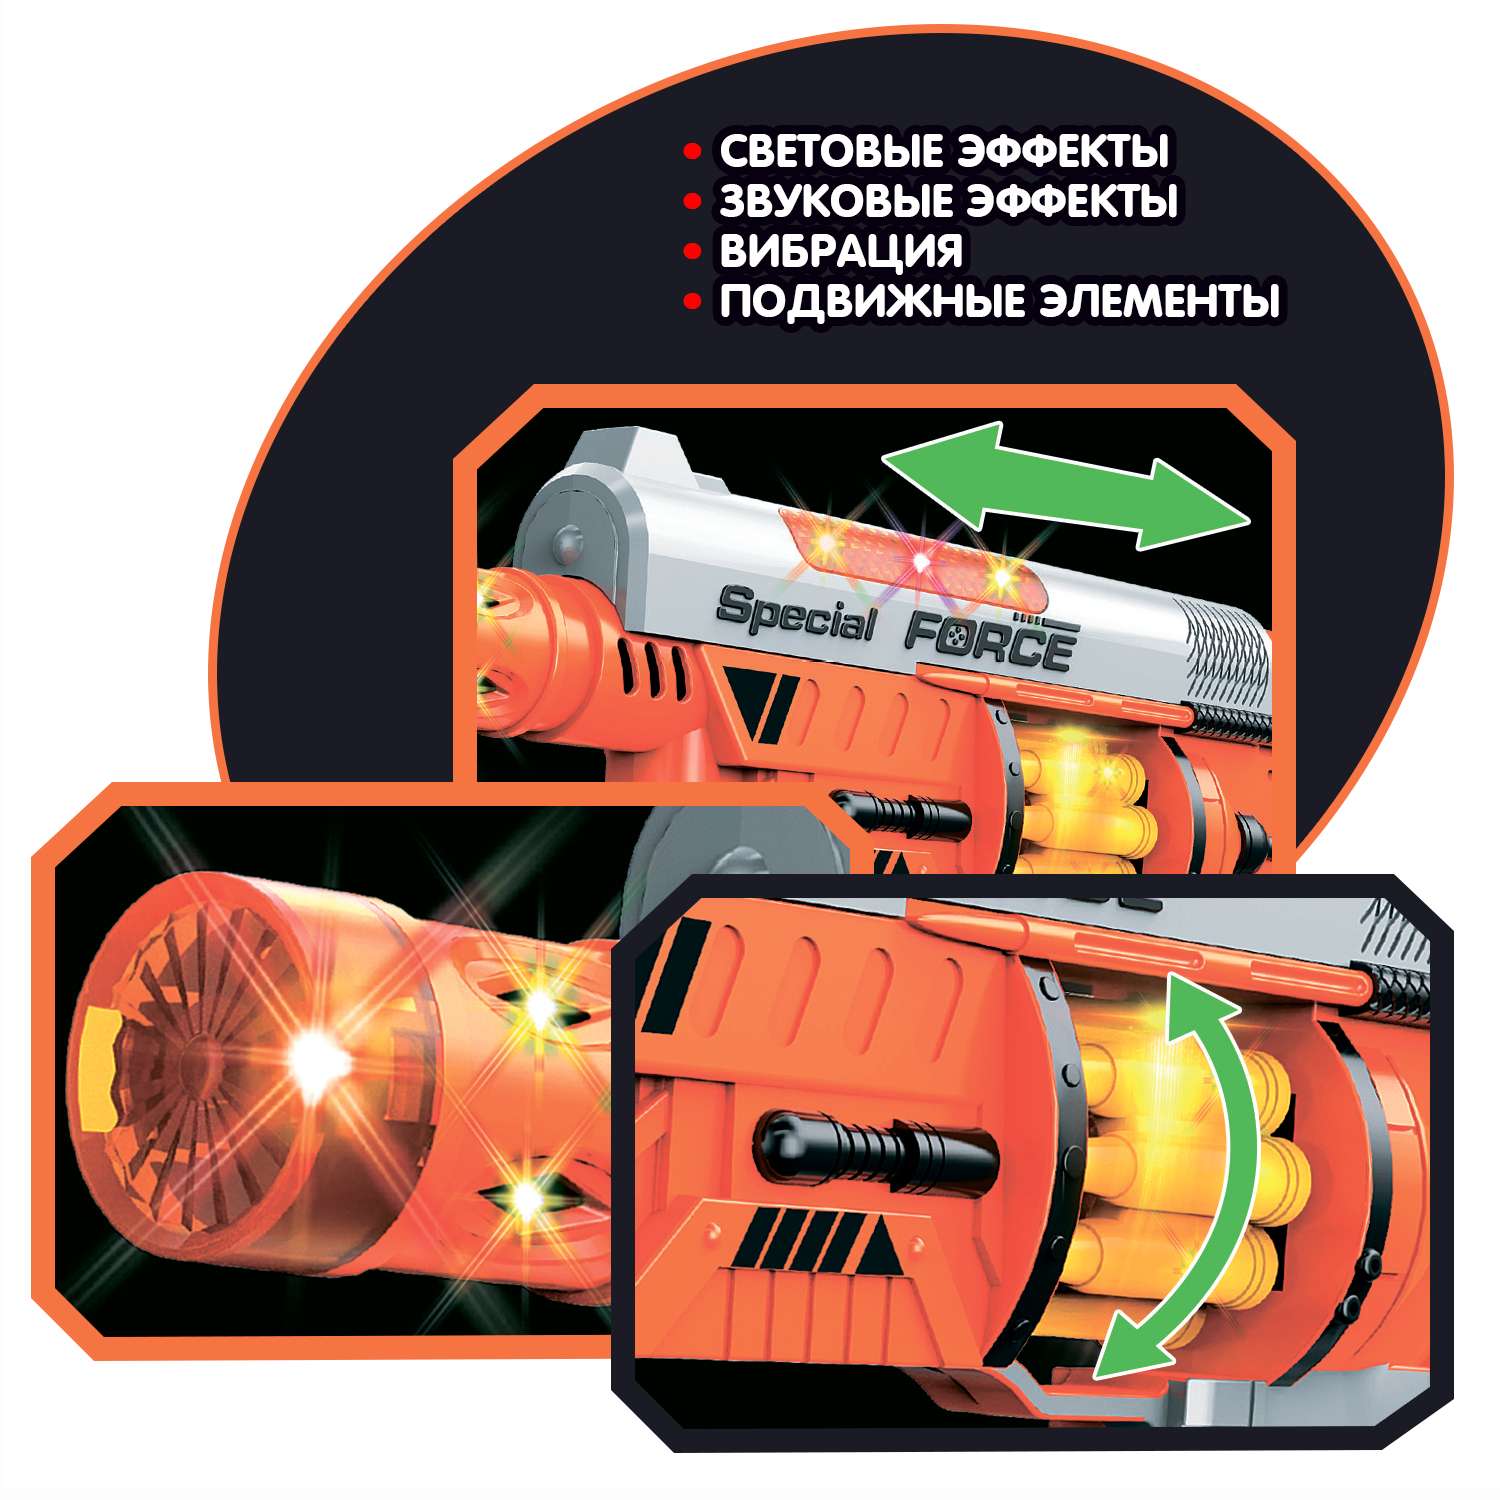 Пистолет BONDIBON Фантастика со свето-звуковым эффектом и подвижными элементами серебристо-оранжевого цвета - фото 4